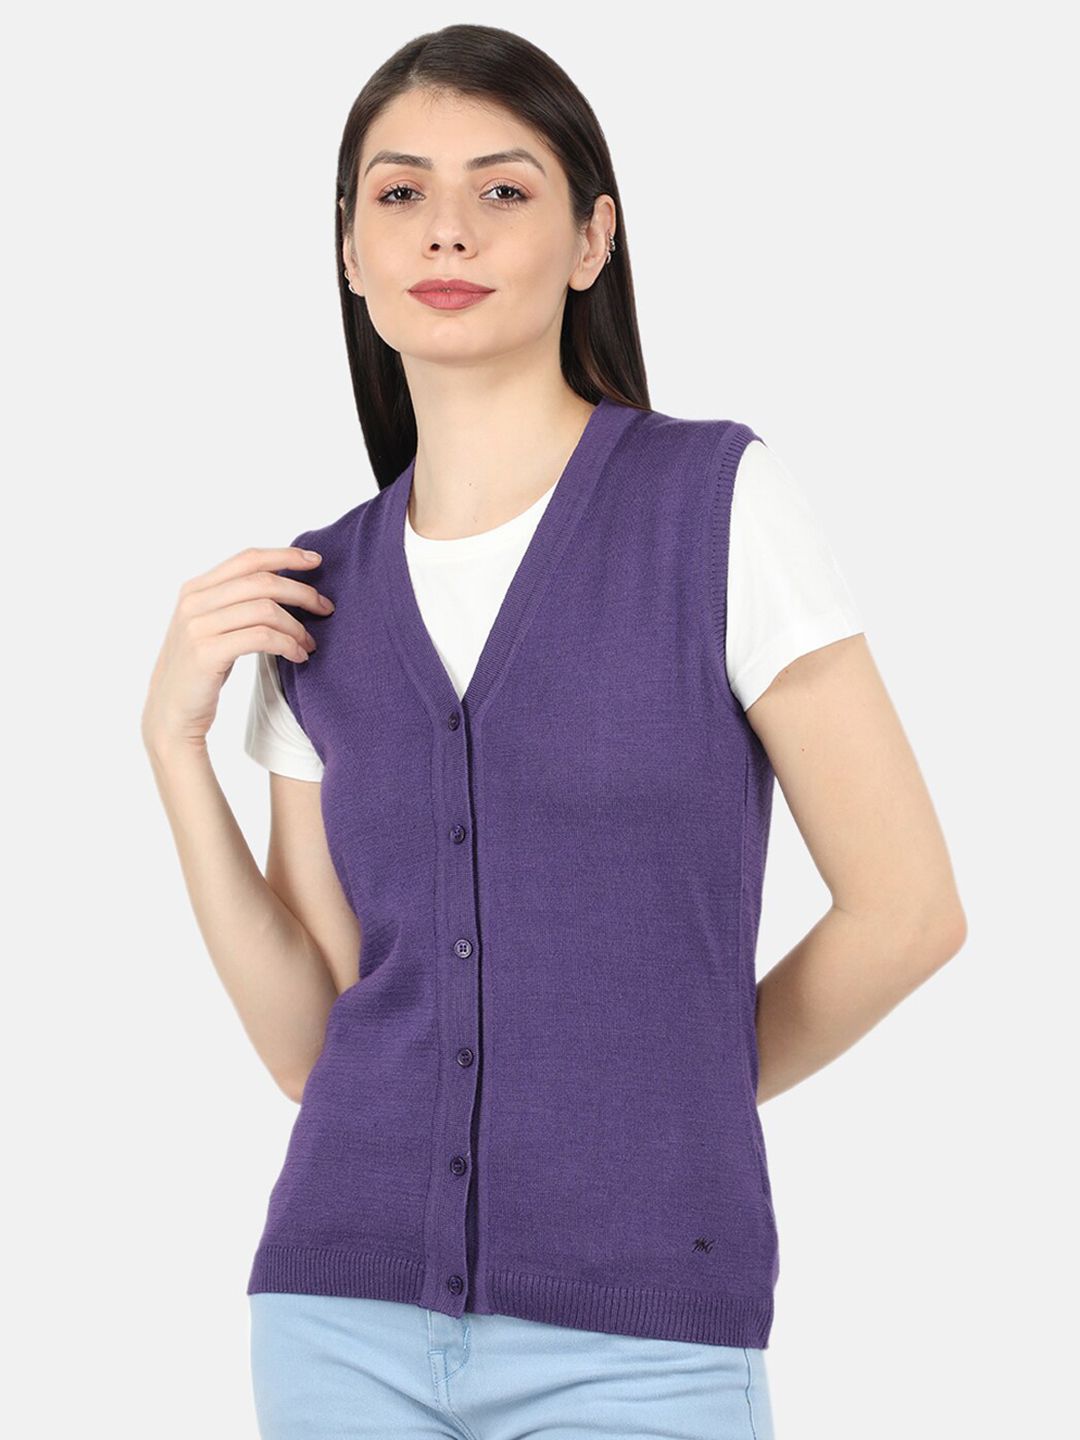 Monte Carlo Women Purple Cardigan sweater Price in India